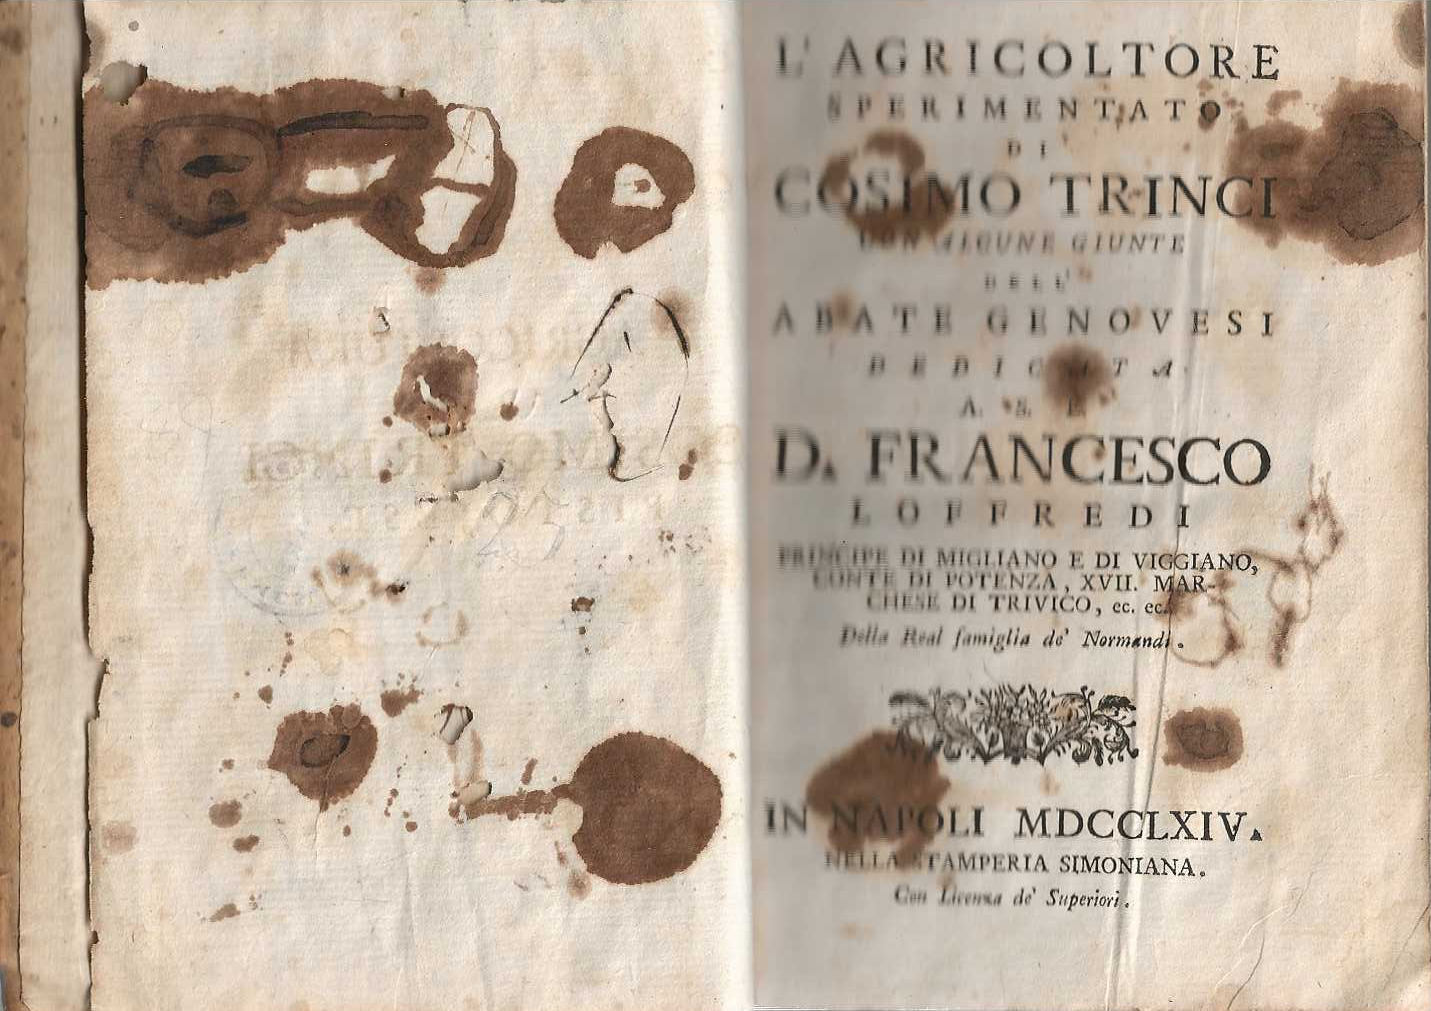 L'agricoltore sperimentato di Cosimo Trinci con alcune giunte dell'abate genovesi …